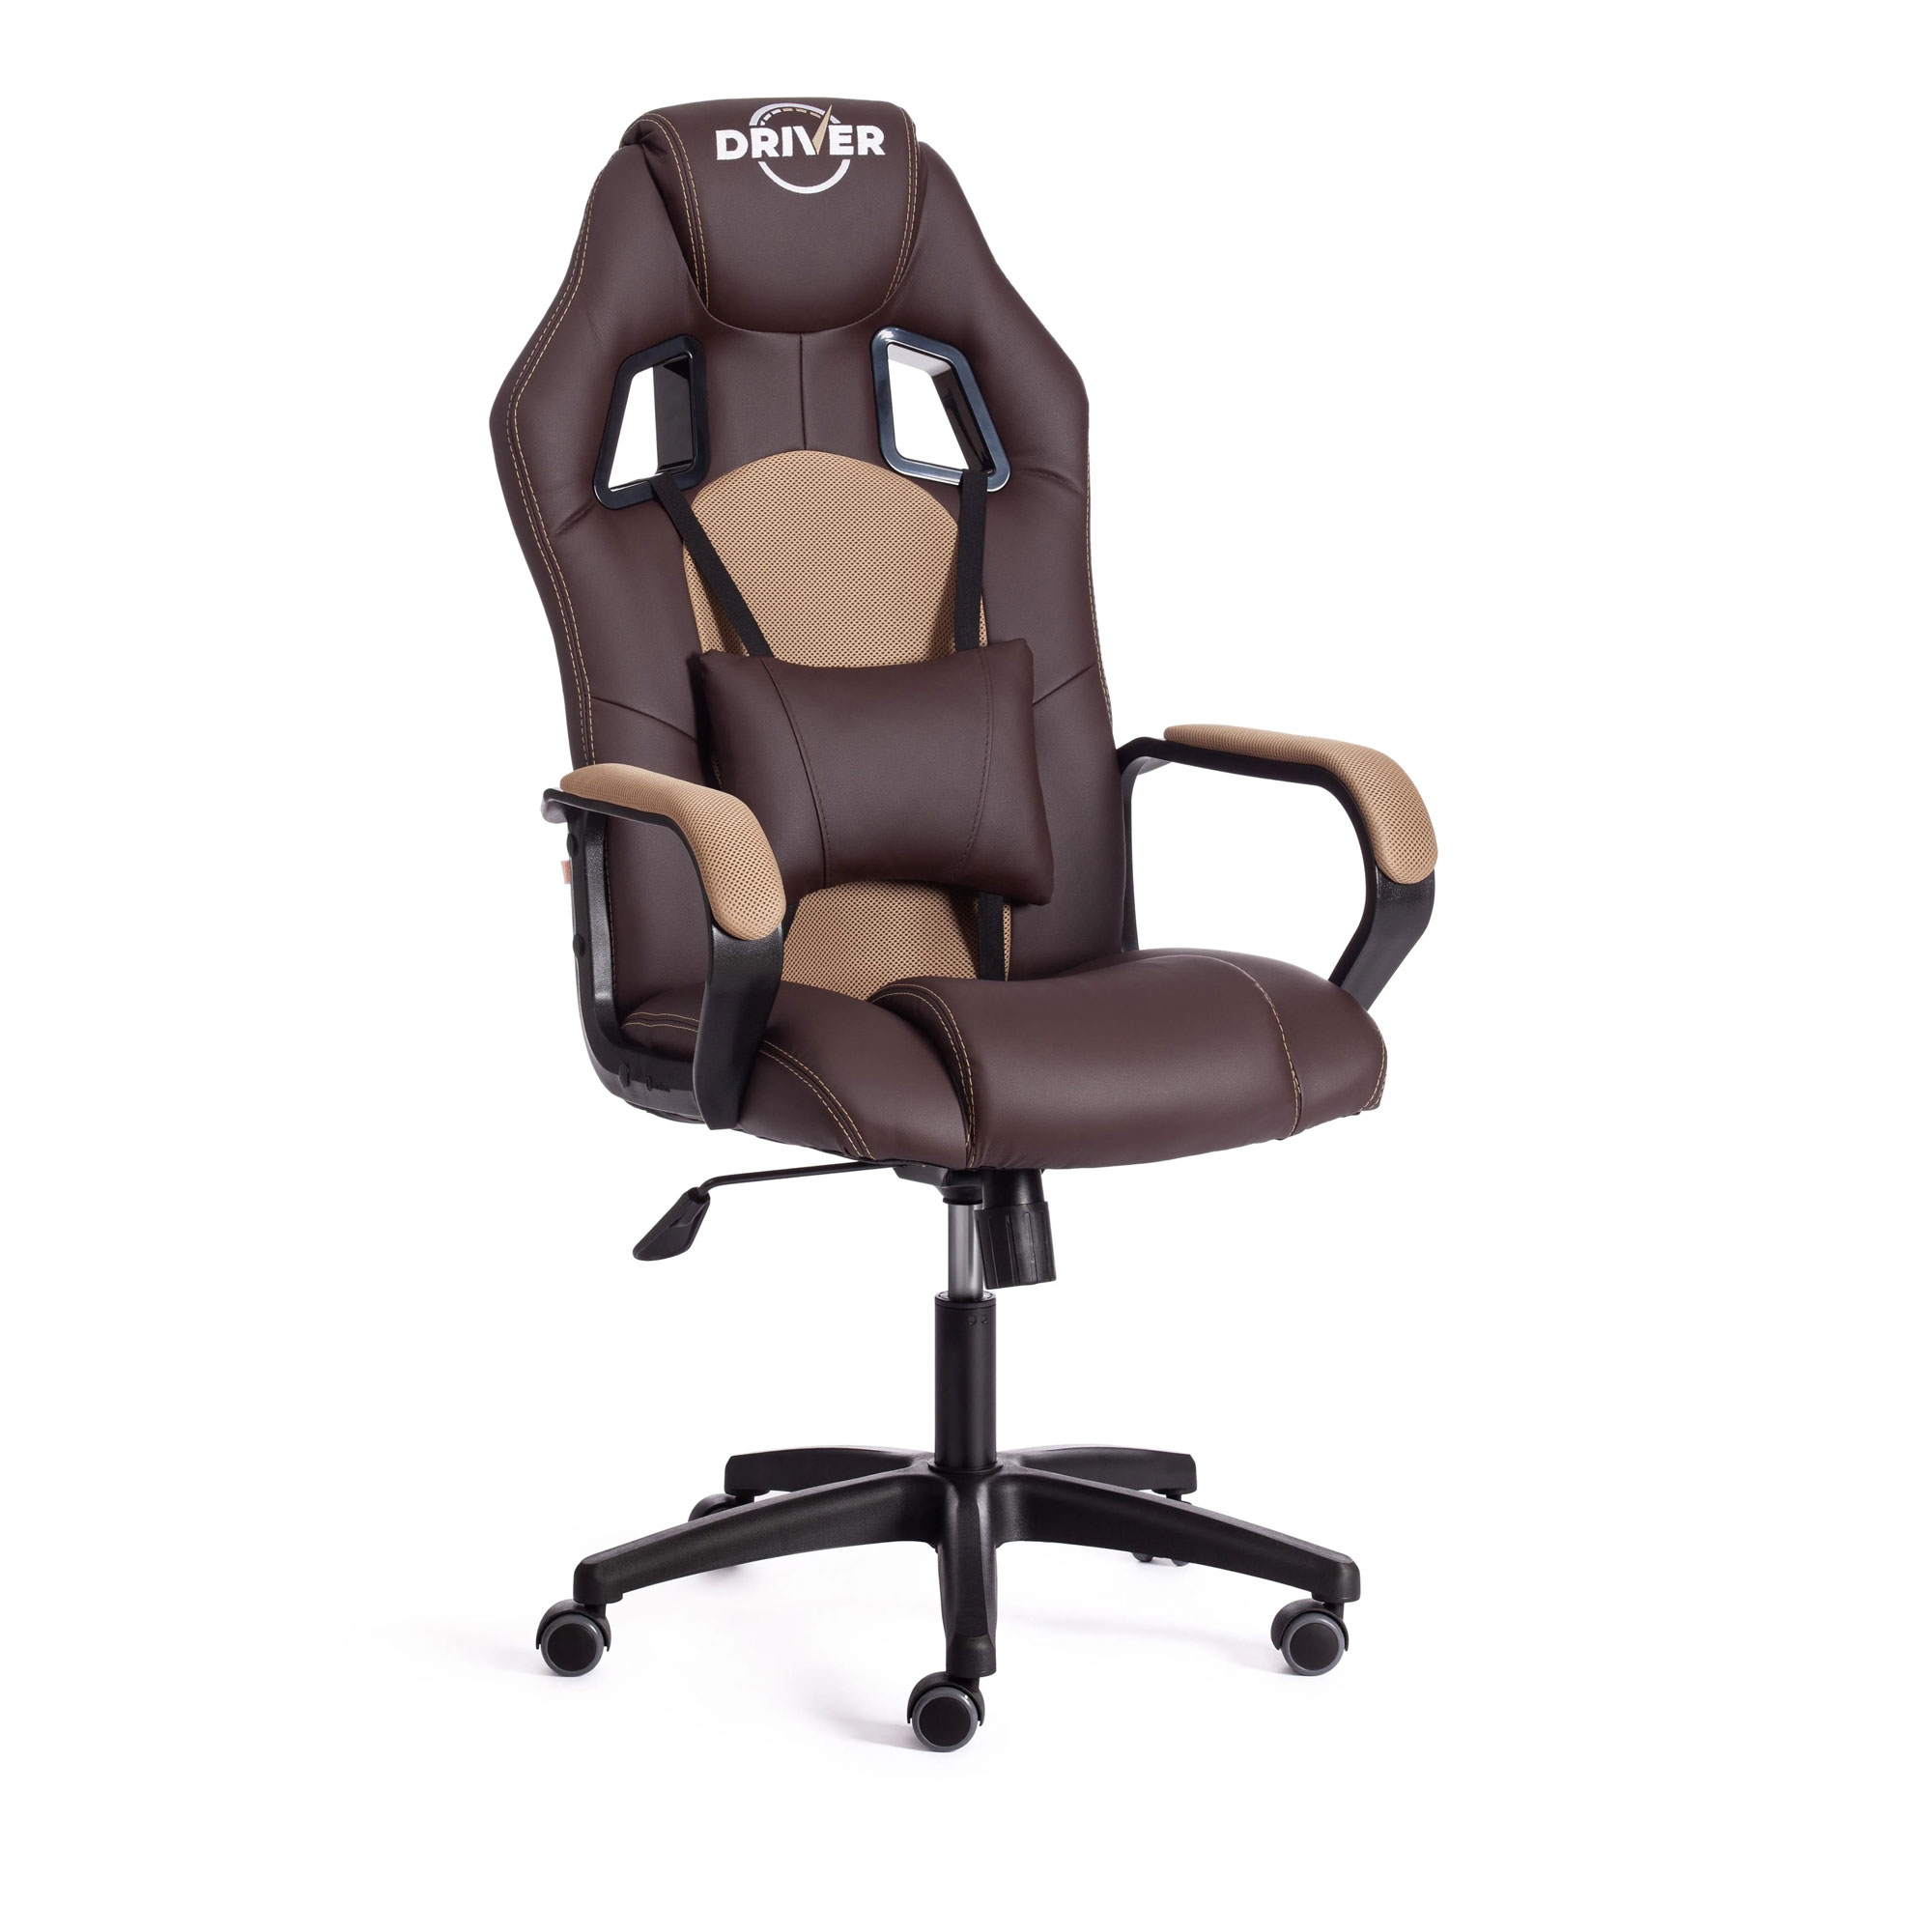 Кресло компьютерное TC Driver искусственная кожа коричневое с бронзовым 55х49х126 см кресло компьютерное tc driver искусственная кожа чёрное с красным 55х49х126 см